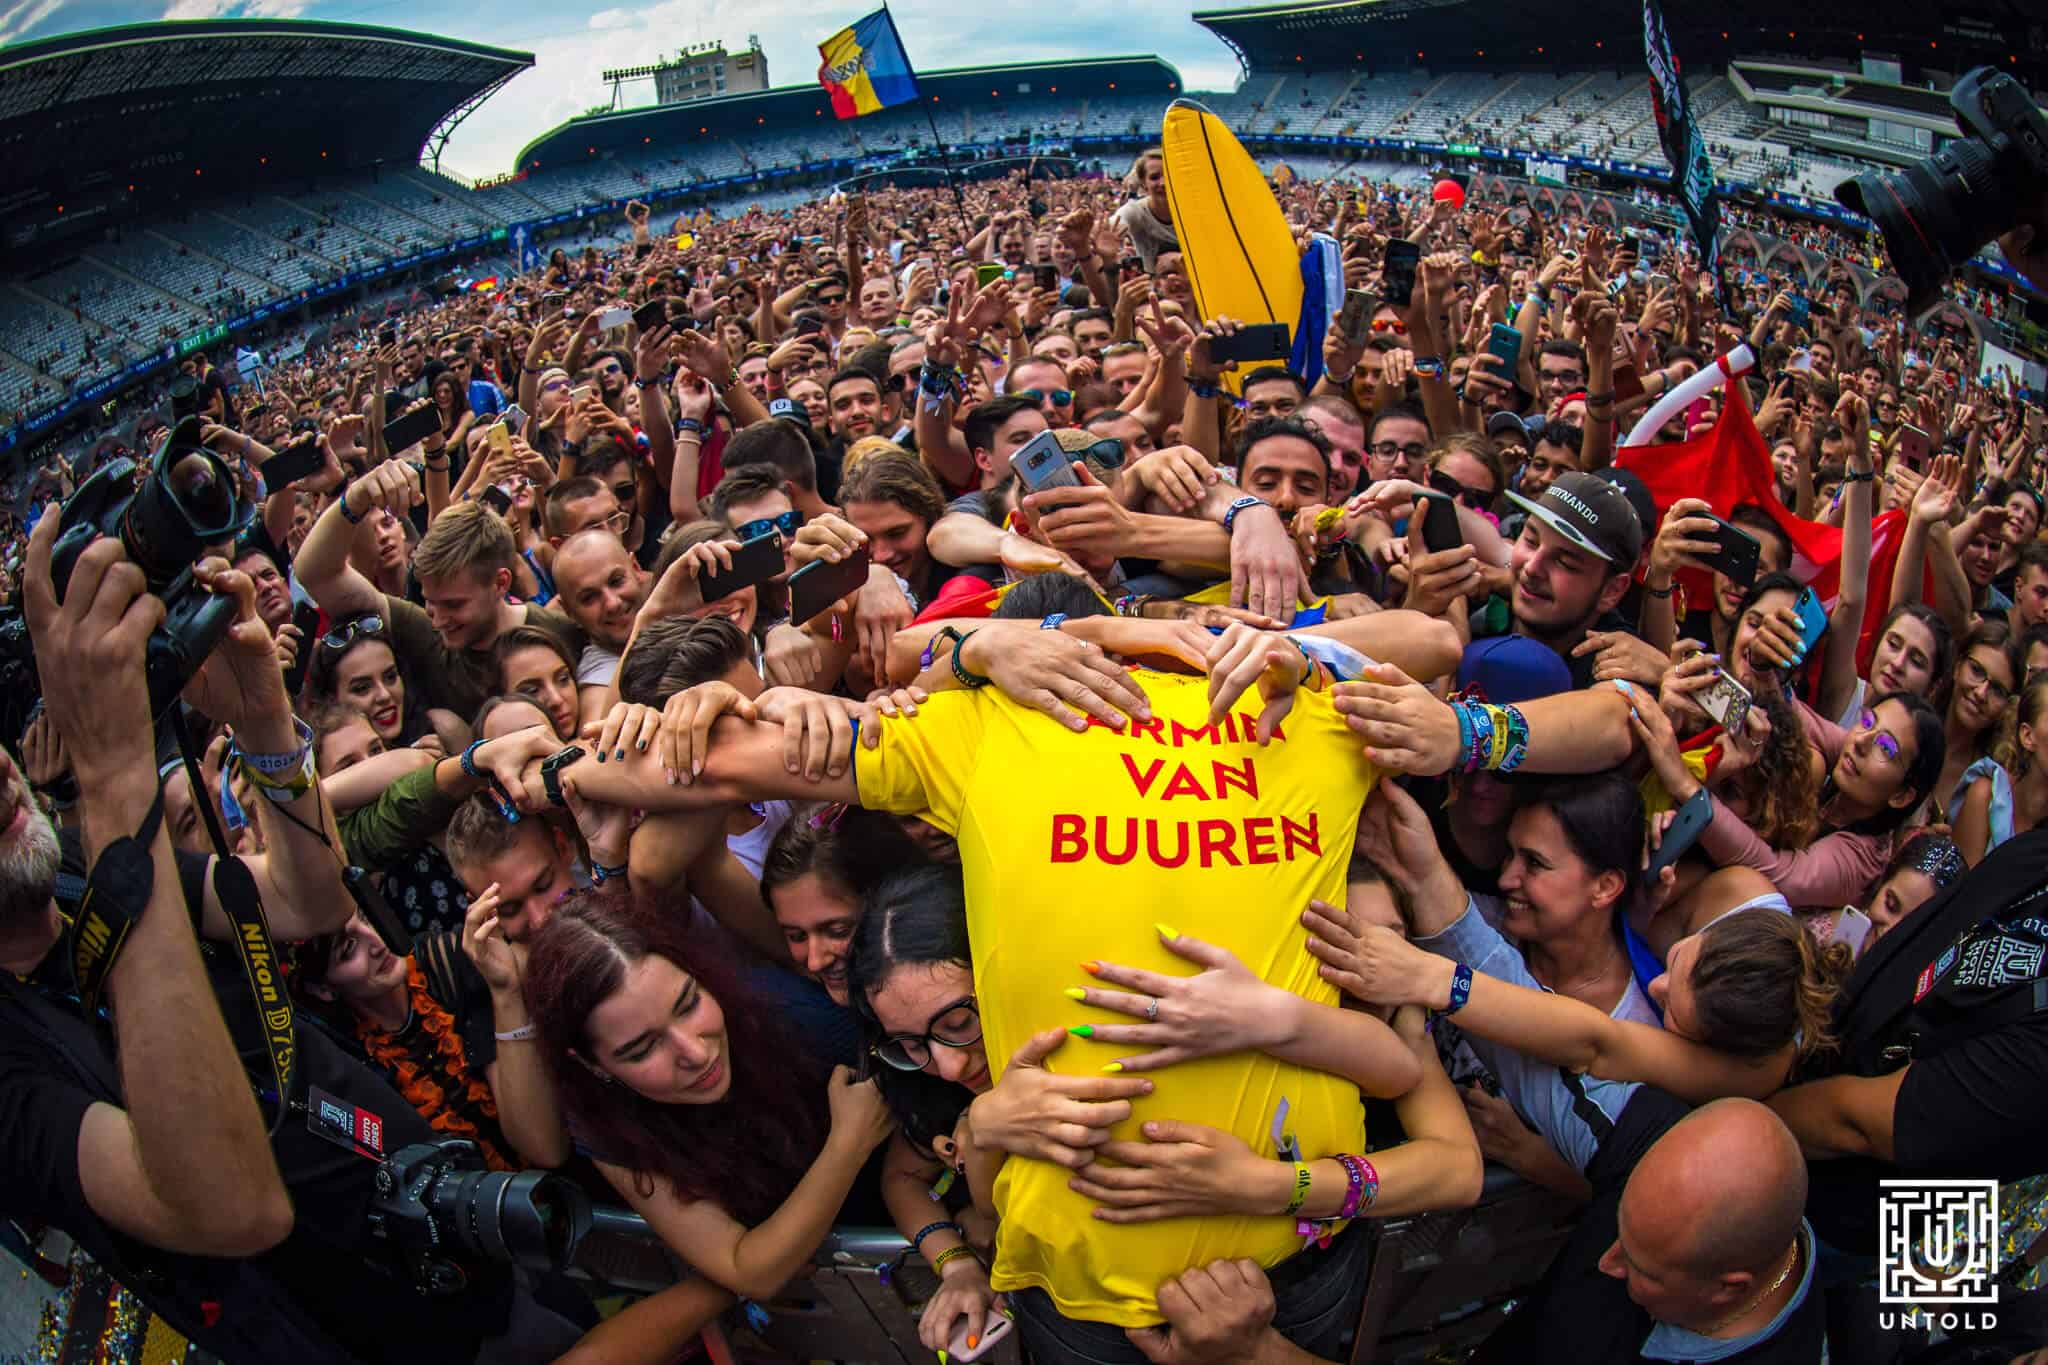 Armin van Buuren delivers massive 5 hour set at UNTOLD Festival: Watch